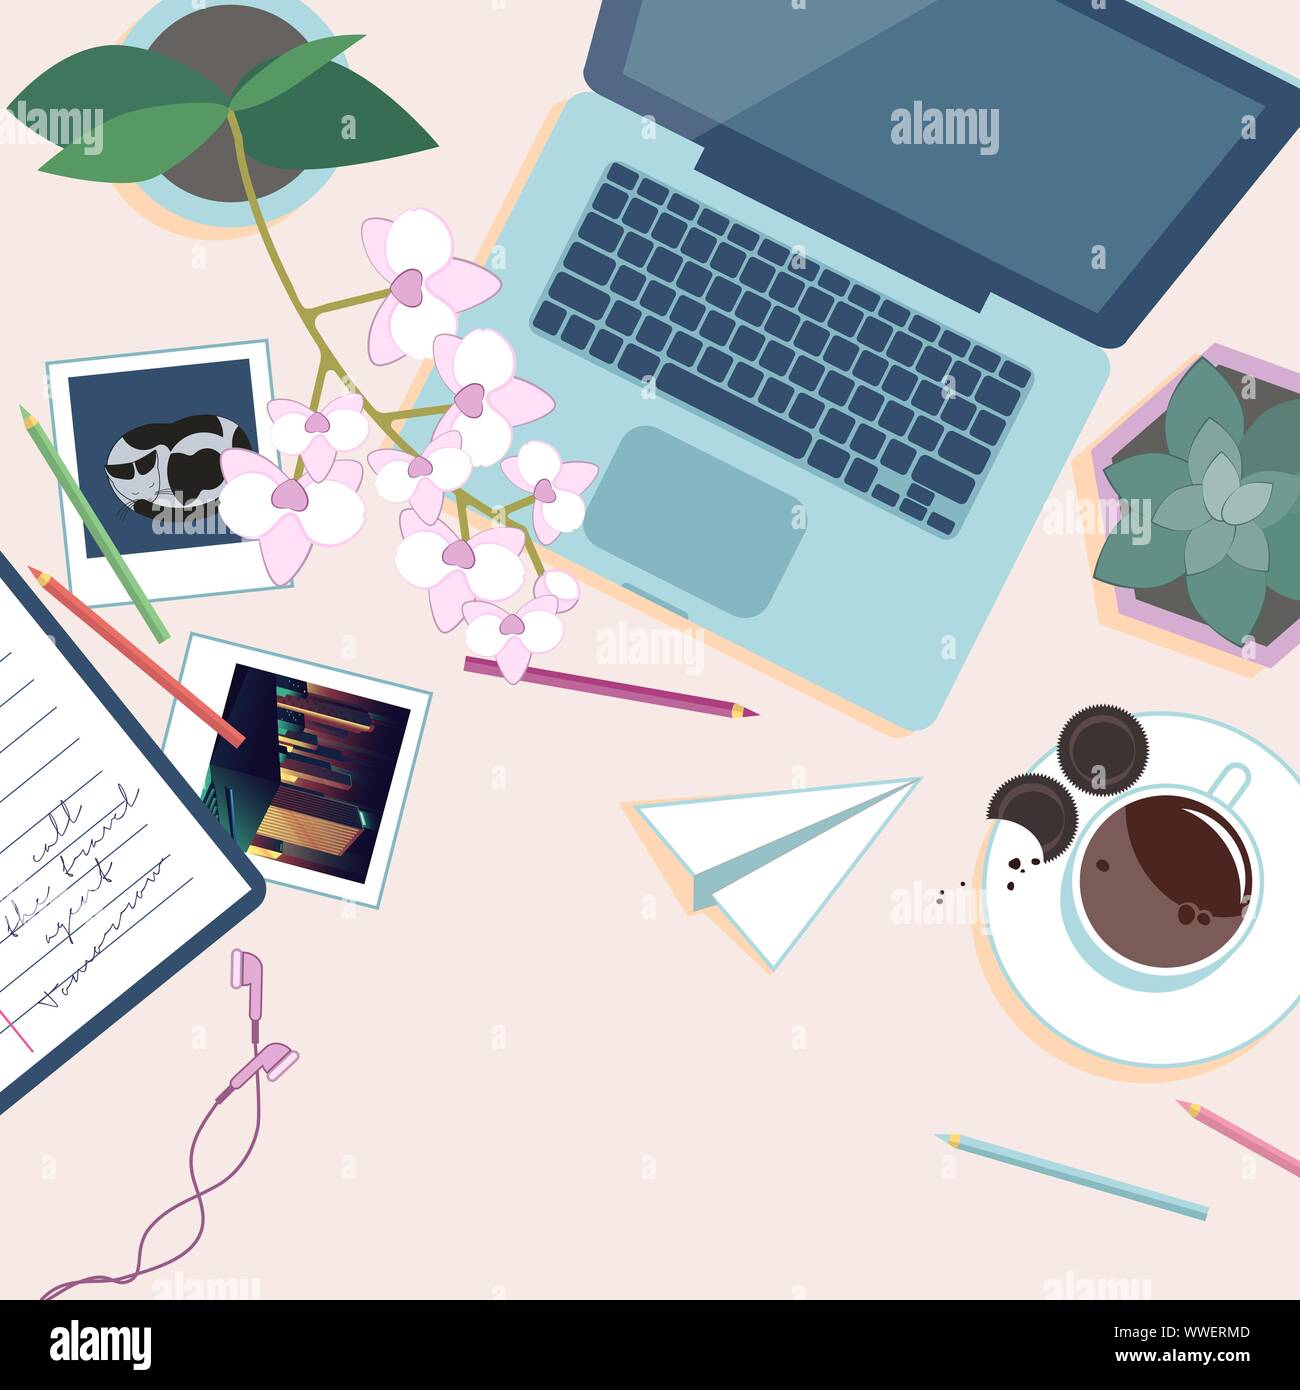 Arbeitsplatz Ansicht von oben. Schreibtisch mit Laptop, Topf Blumen, Tasse Kaffee, Bleistifte und Fotos. Vector Illustration Stock Vektor